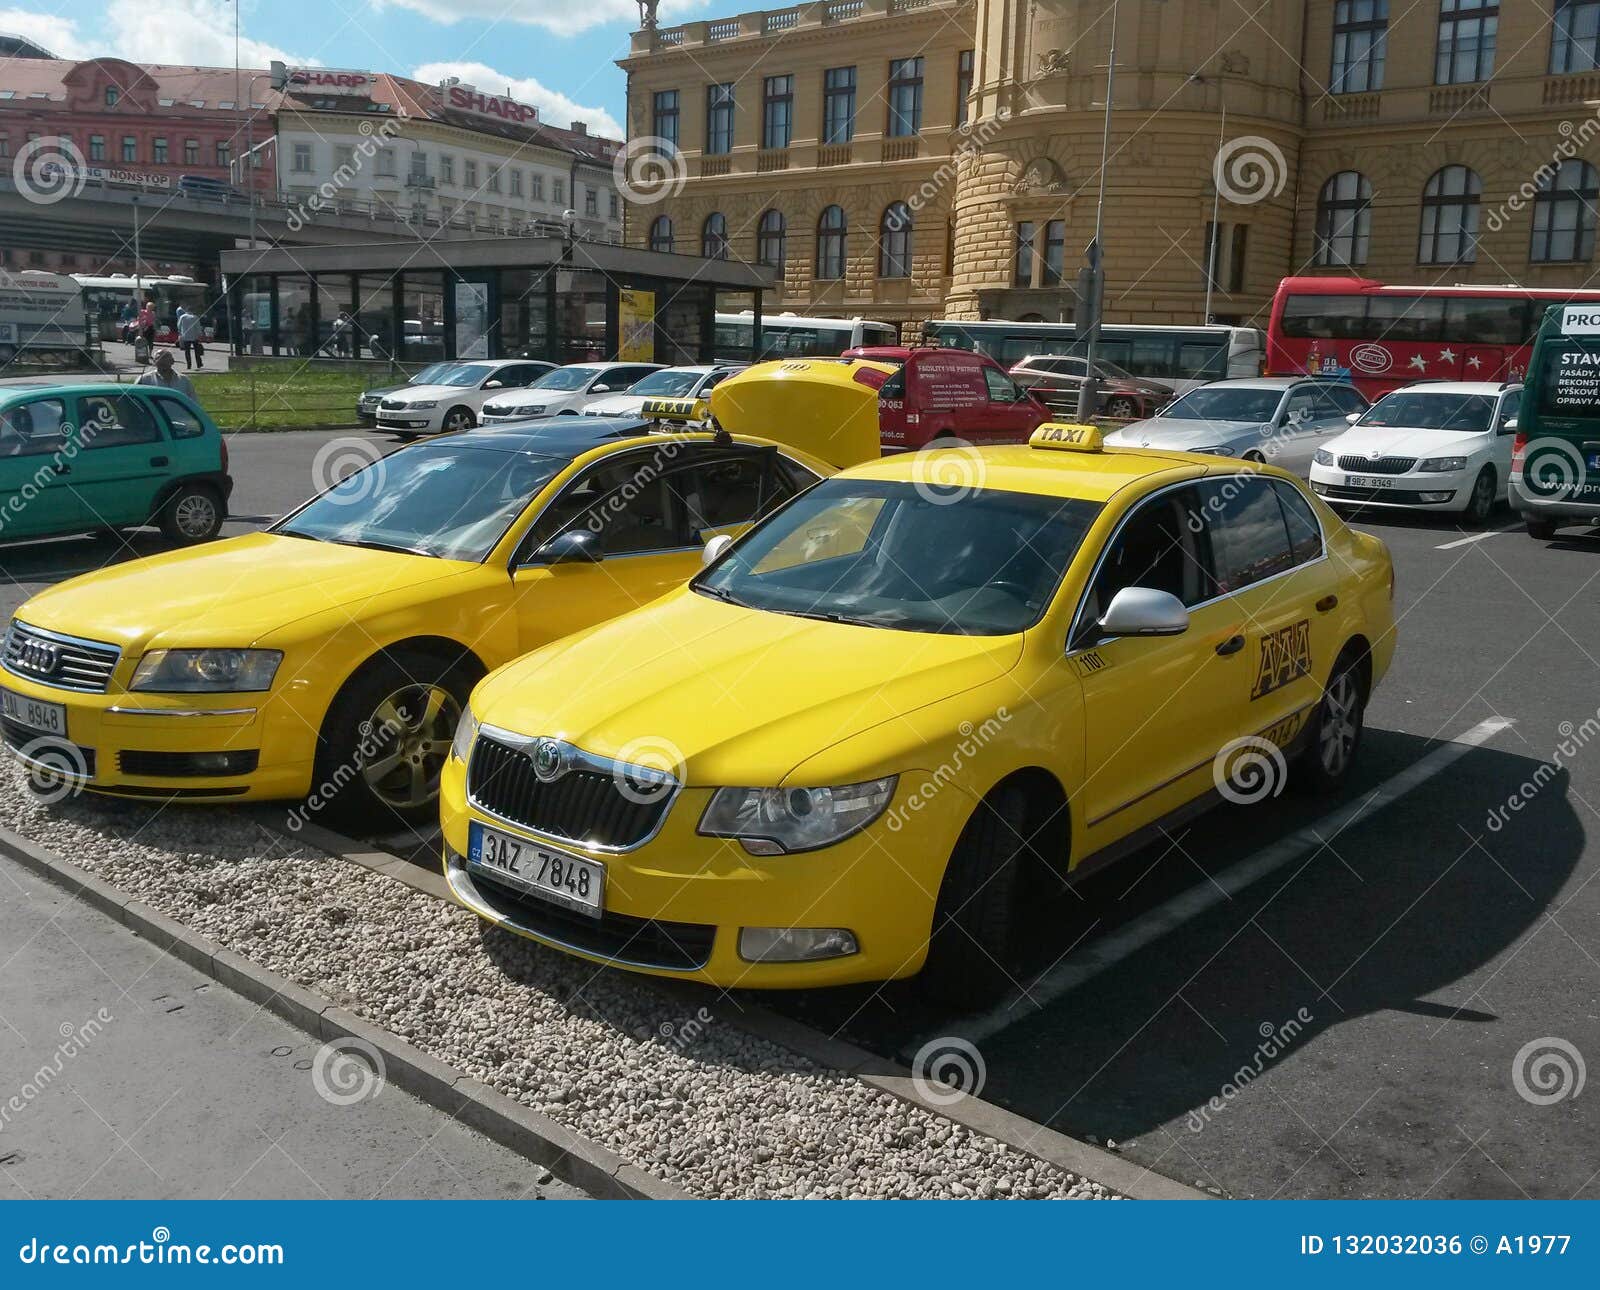 Vienna in czech taxi CZECH SWINGERS